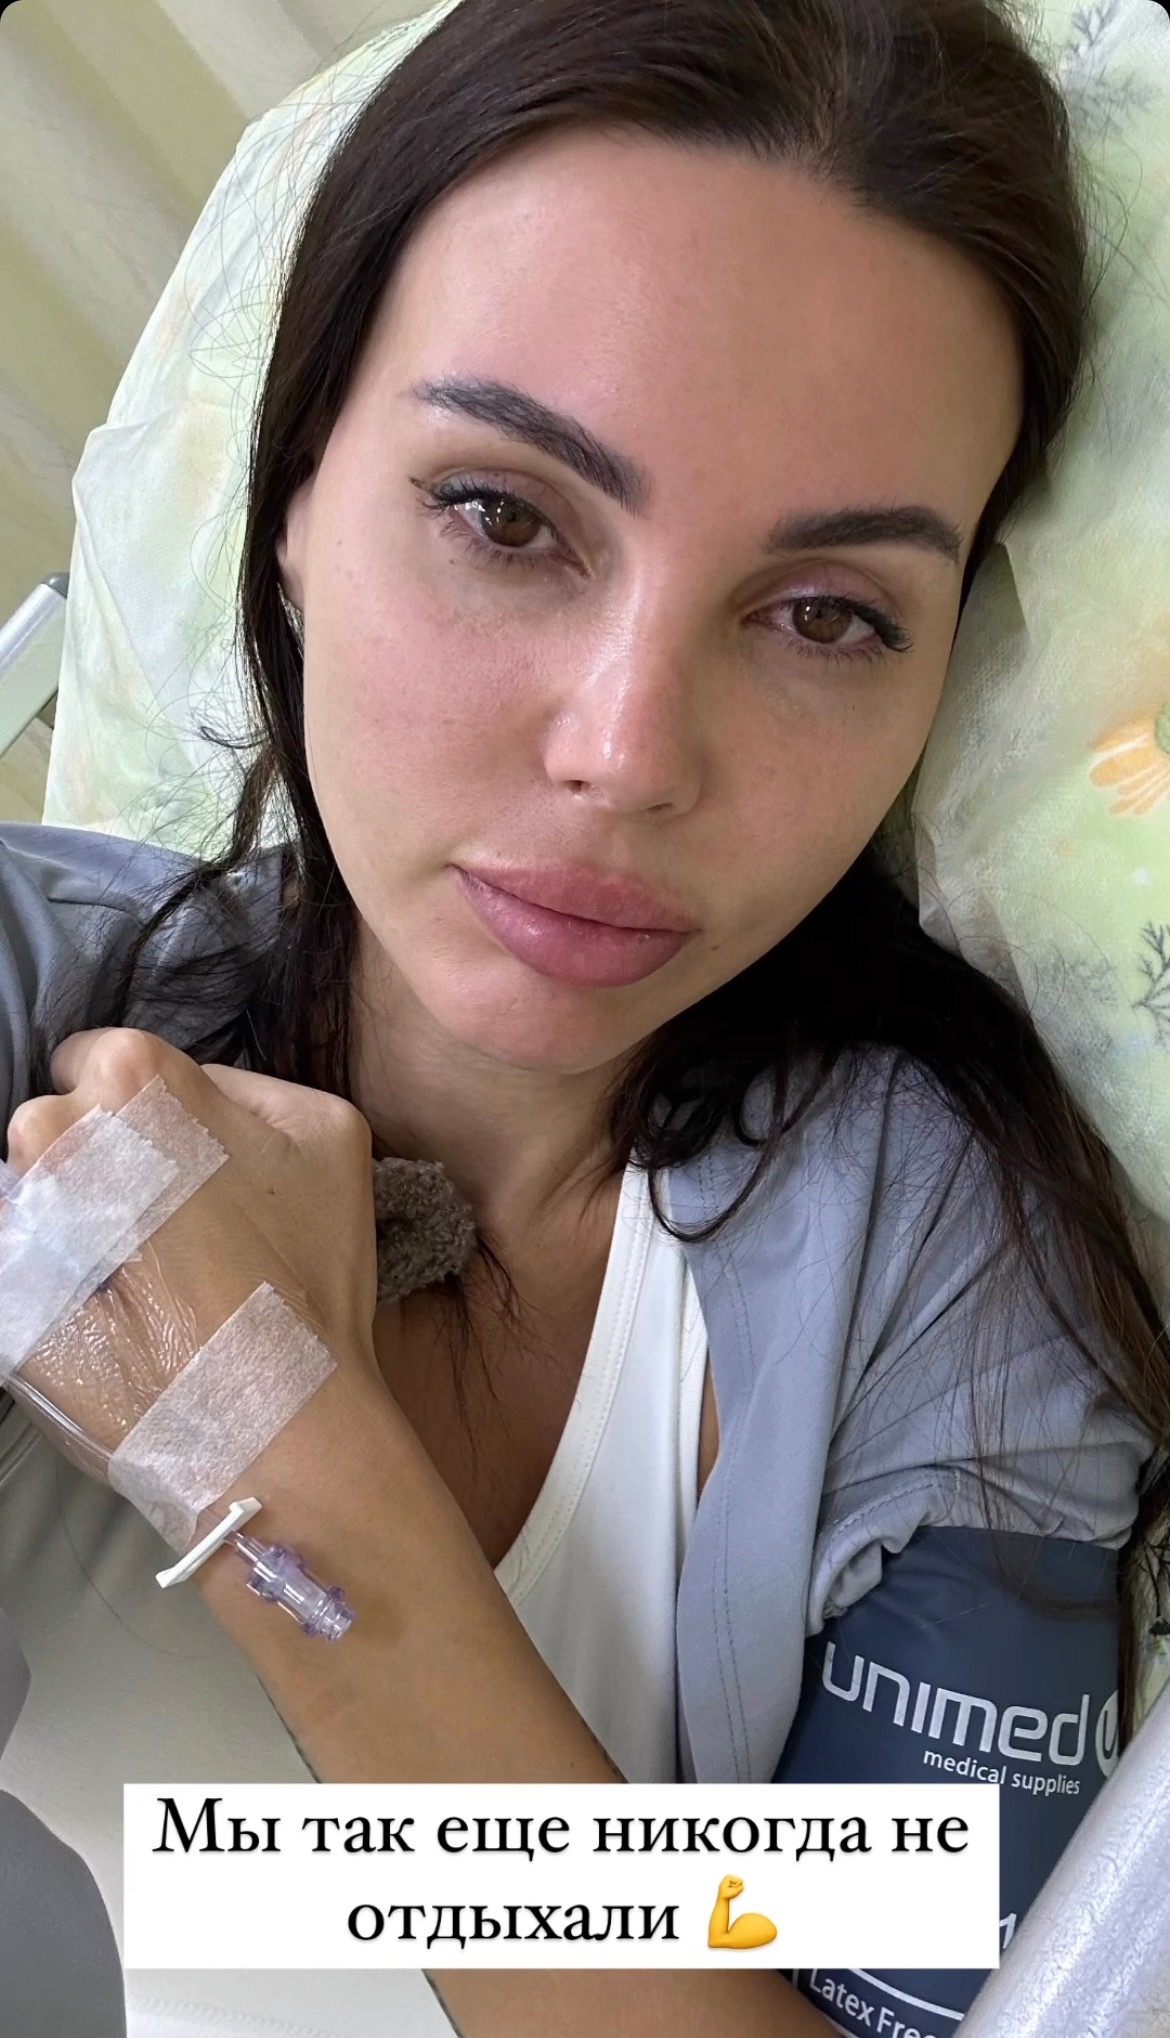 "Ходим только в больницу": Оксана Самойлова рассказала об испорченном отпуске
